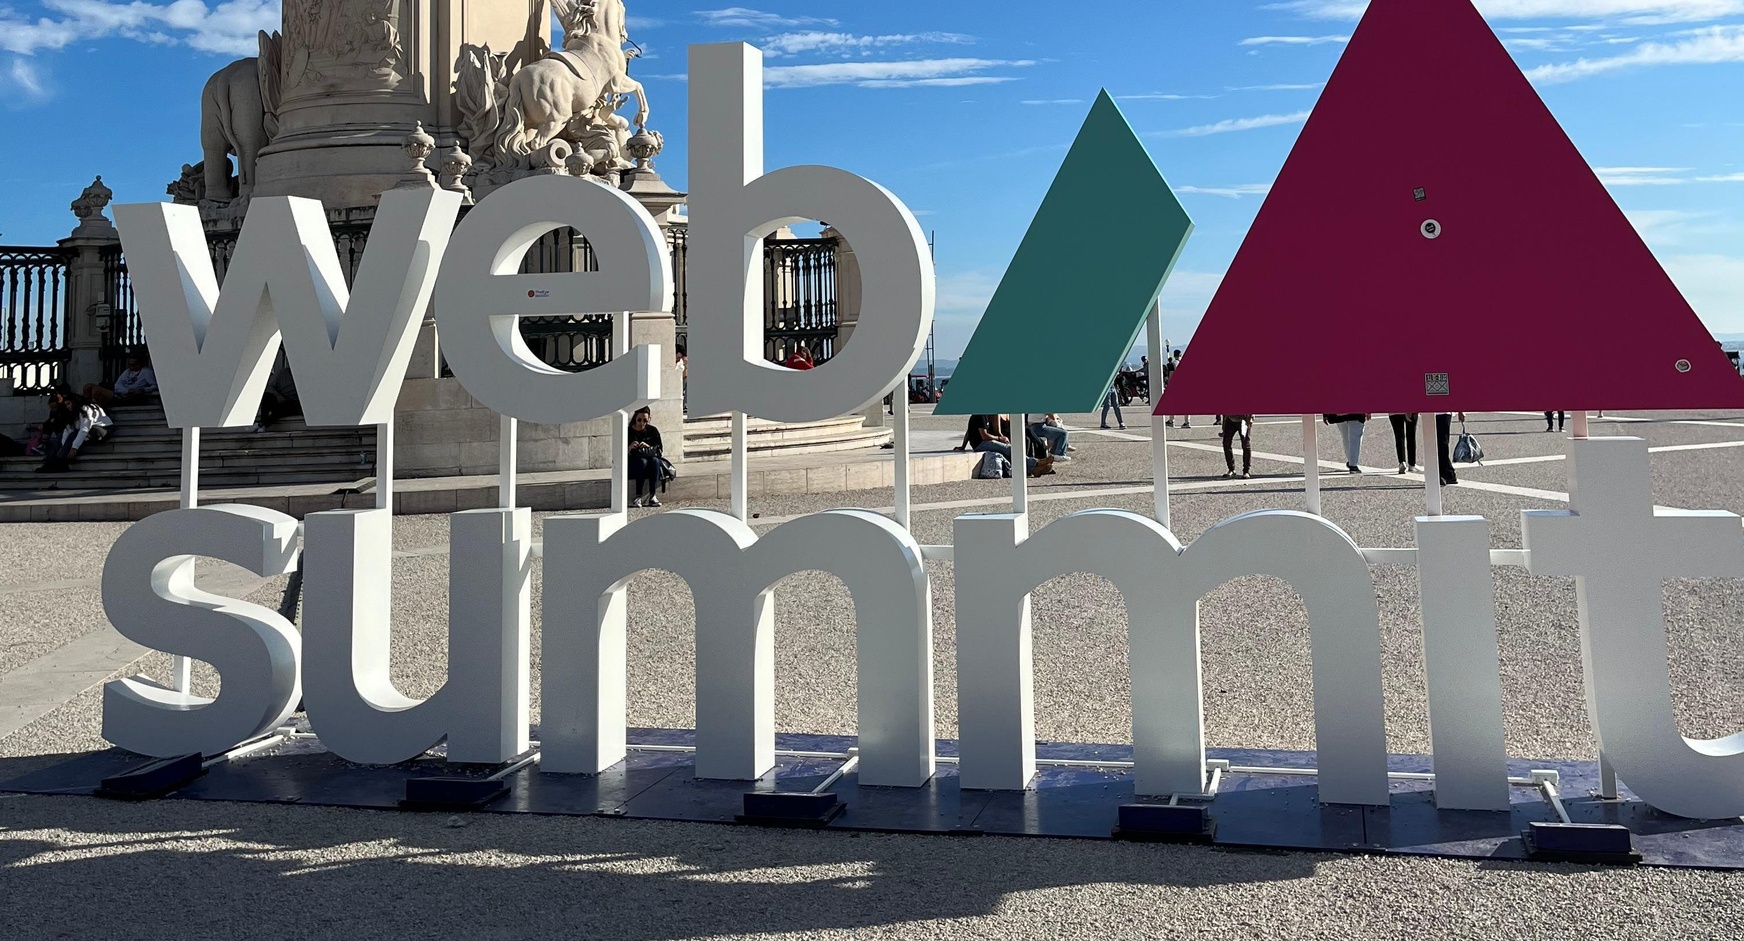 Web Summit 2023 Lissabon